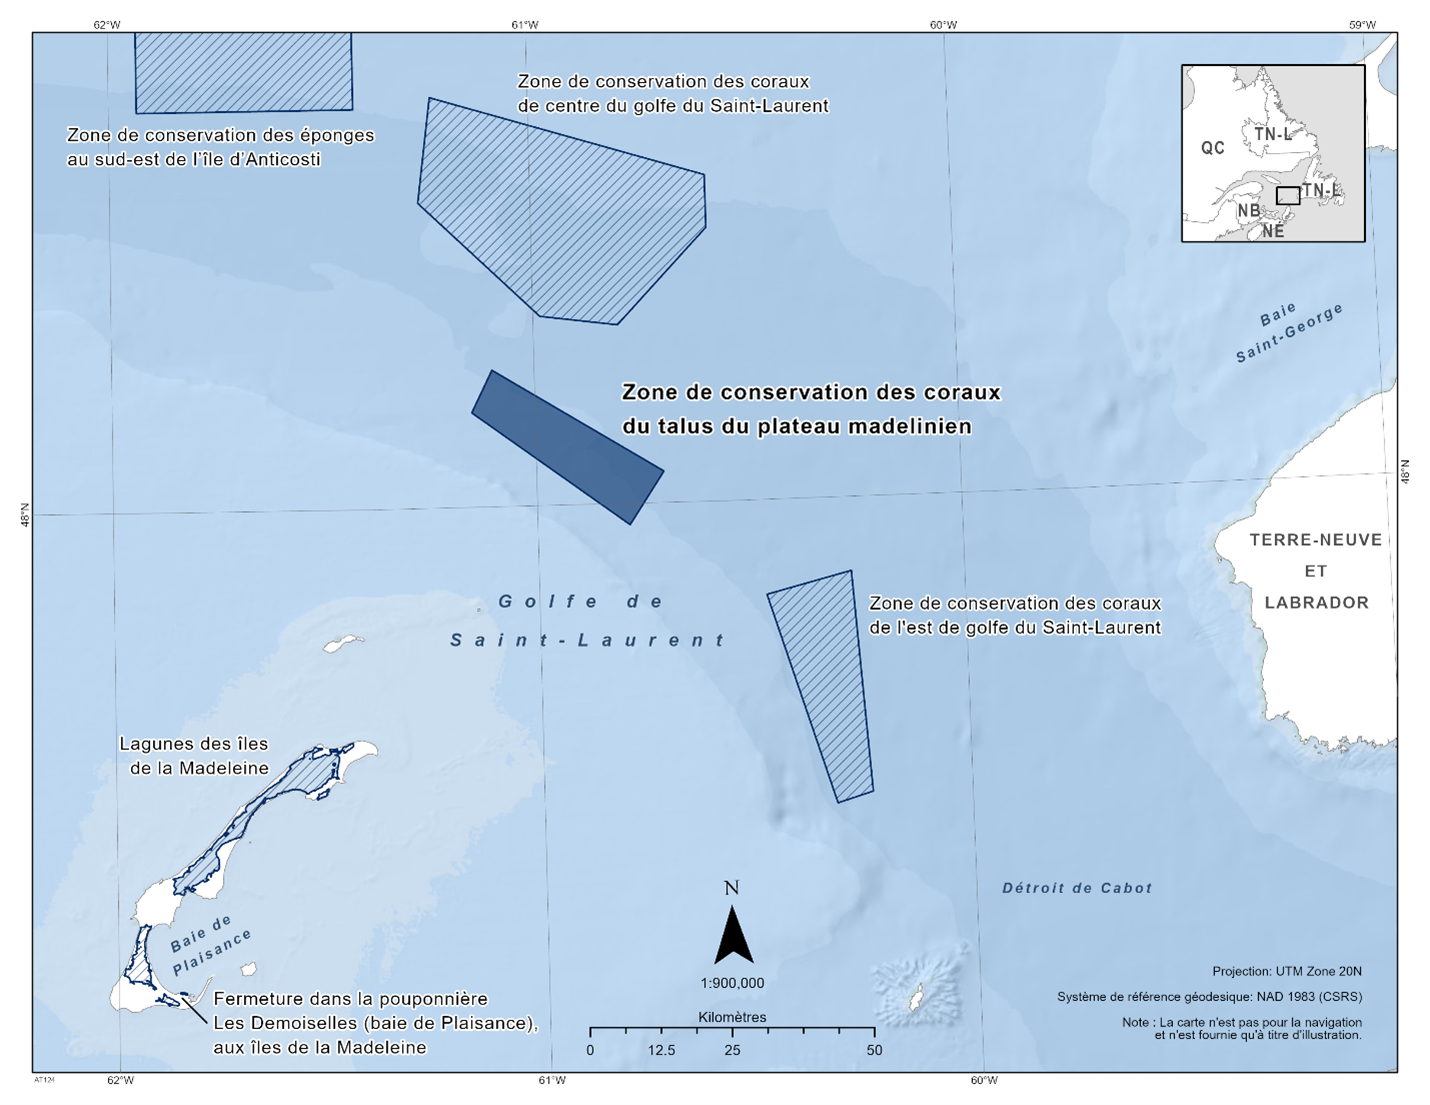 Carte de la zone de conservation des coraux du talus du plateau madelinien représentée en bleu foncé. La carte inclut également les refuges marins situés à proximité avec des lignes diagonales bleu foncé (zone de conservation de l'éponge du sud-est de l'île d'Anticosti, zone de conservation des coraux du centre du golfe du Saint-Laurent, zone de conservation des coraux de l'est du golfe du Saint-Laurent, fermeture des lagunes des Îles-de-la-Madeleine).